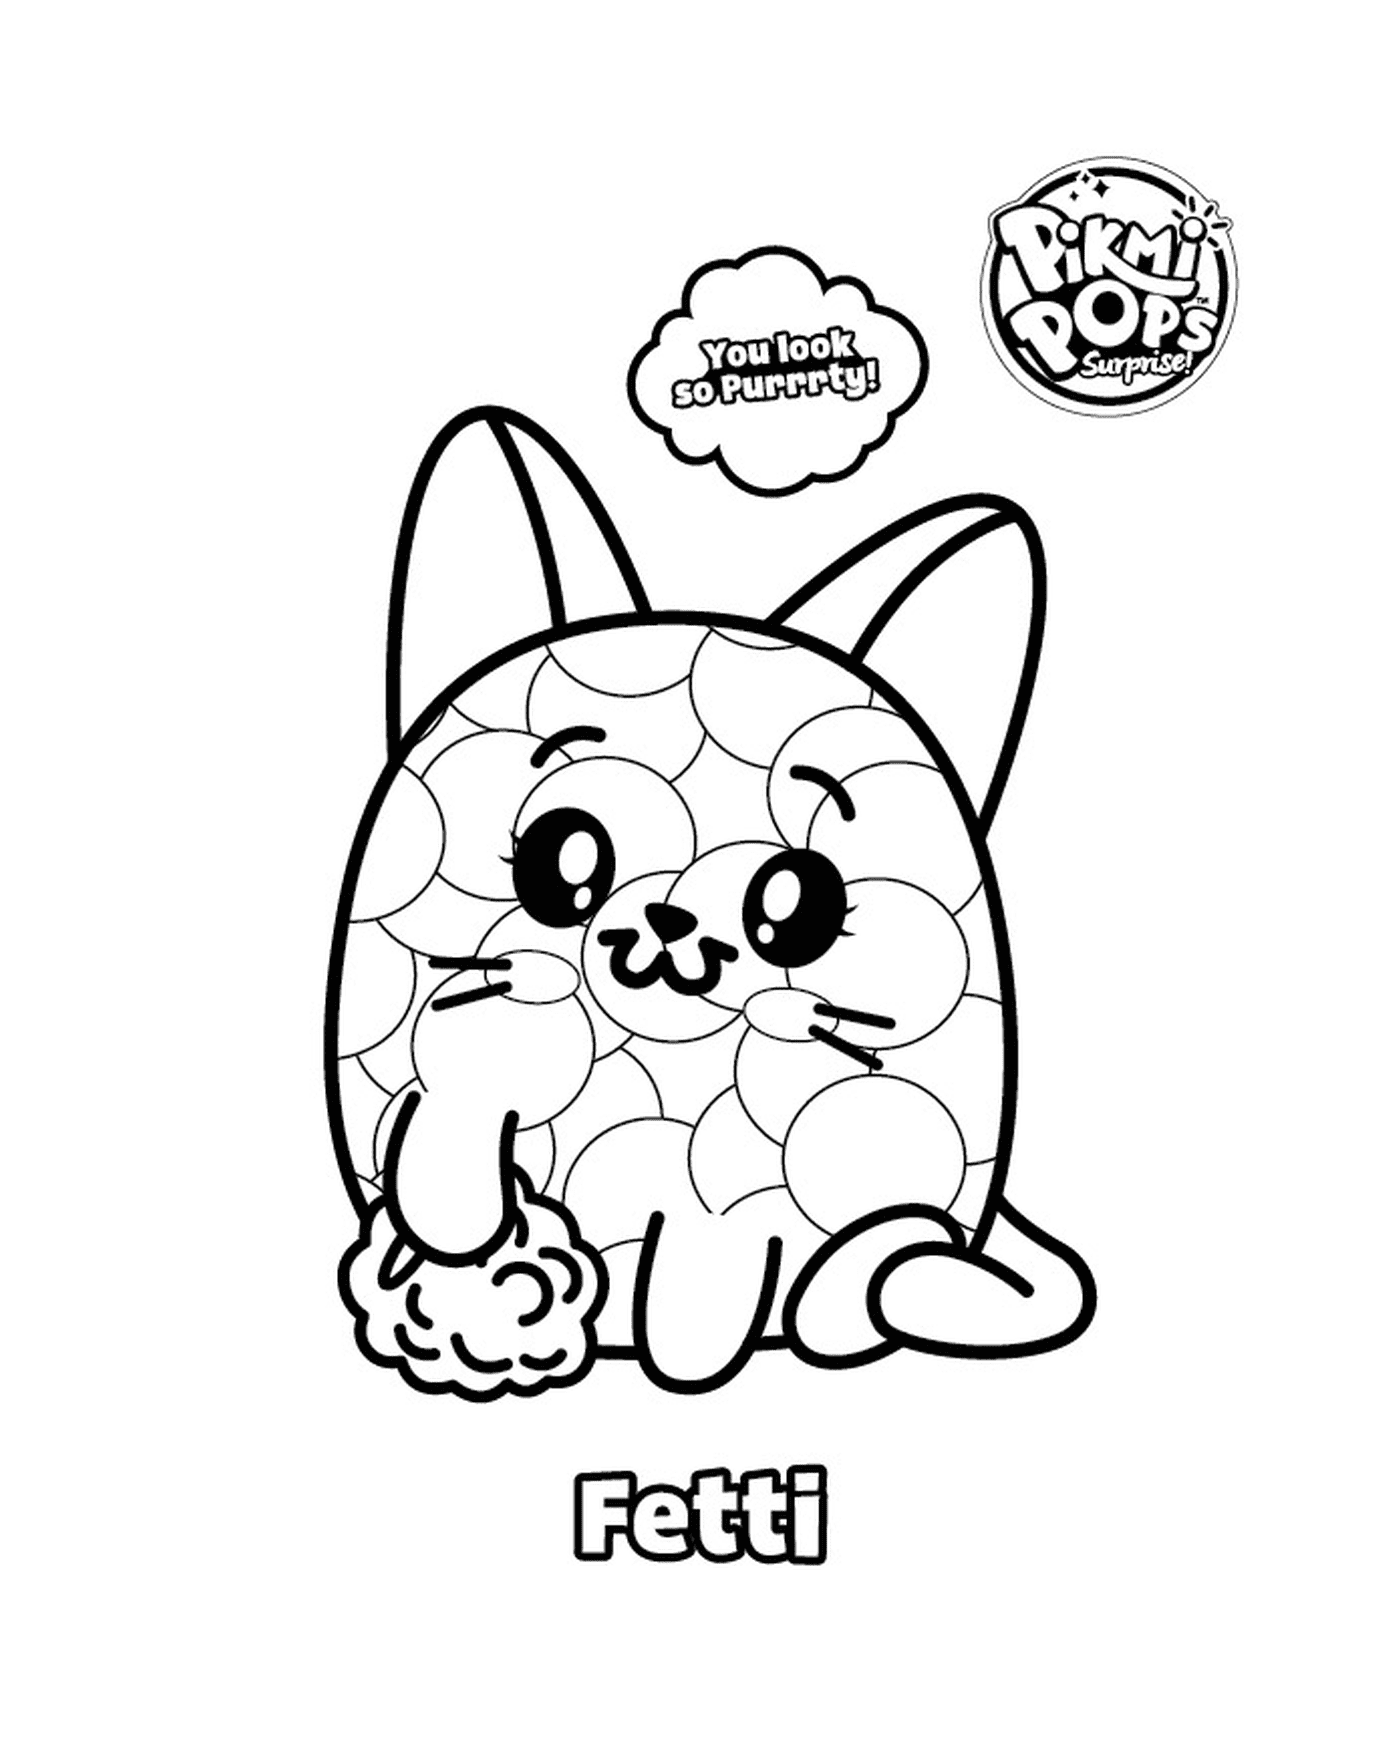   Pikmi Pop avec un chat nommé Fetti 